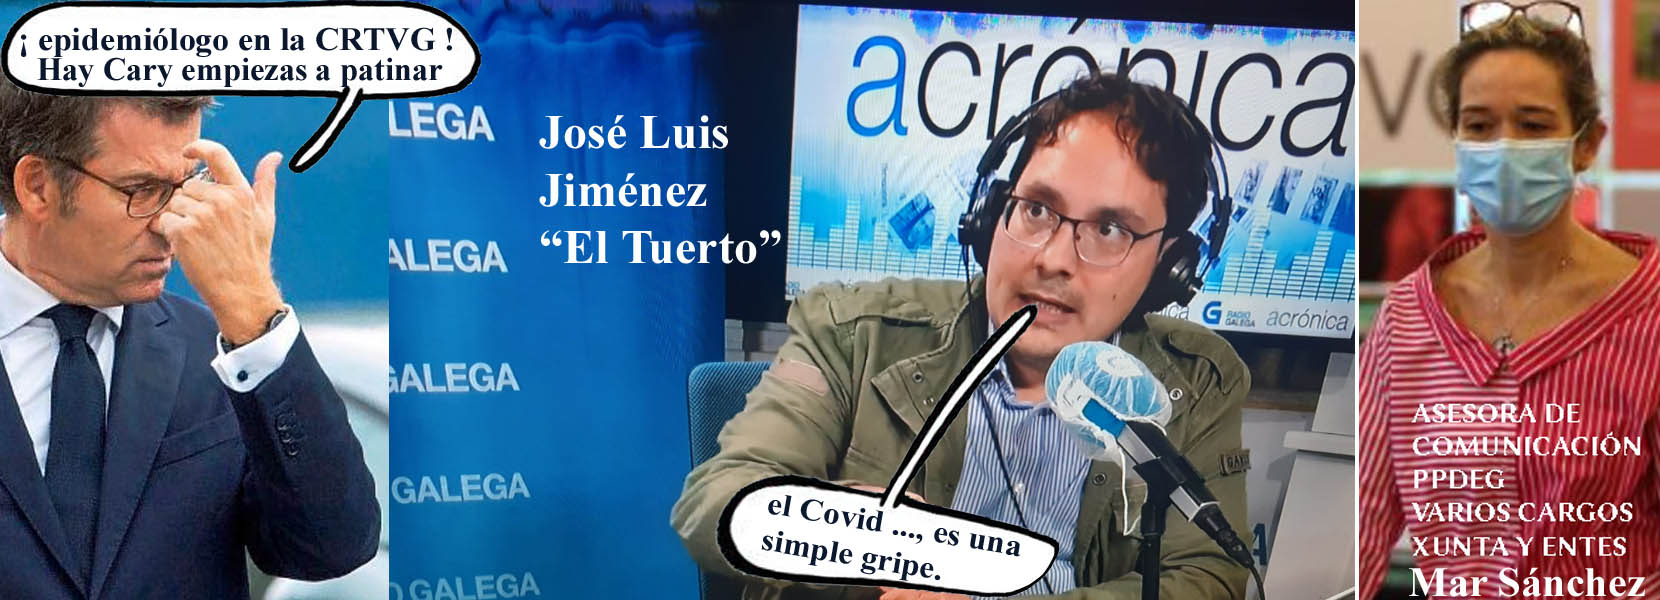 El Tuerto" también "epidemiólogo" José Luis Jiménez cobra 300 euros de los  fondos públicos que paga María del Mar para afirmar publicamente que el  Covid ..., es una simple gripe..., en la